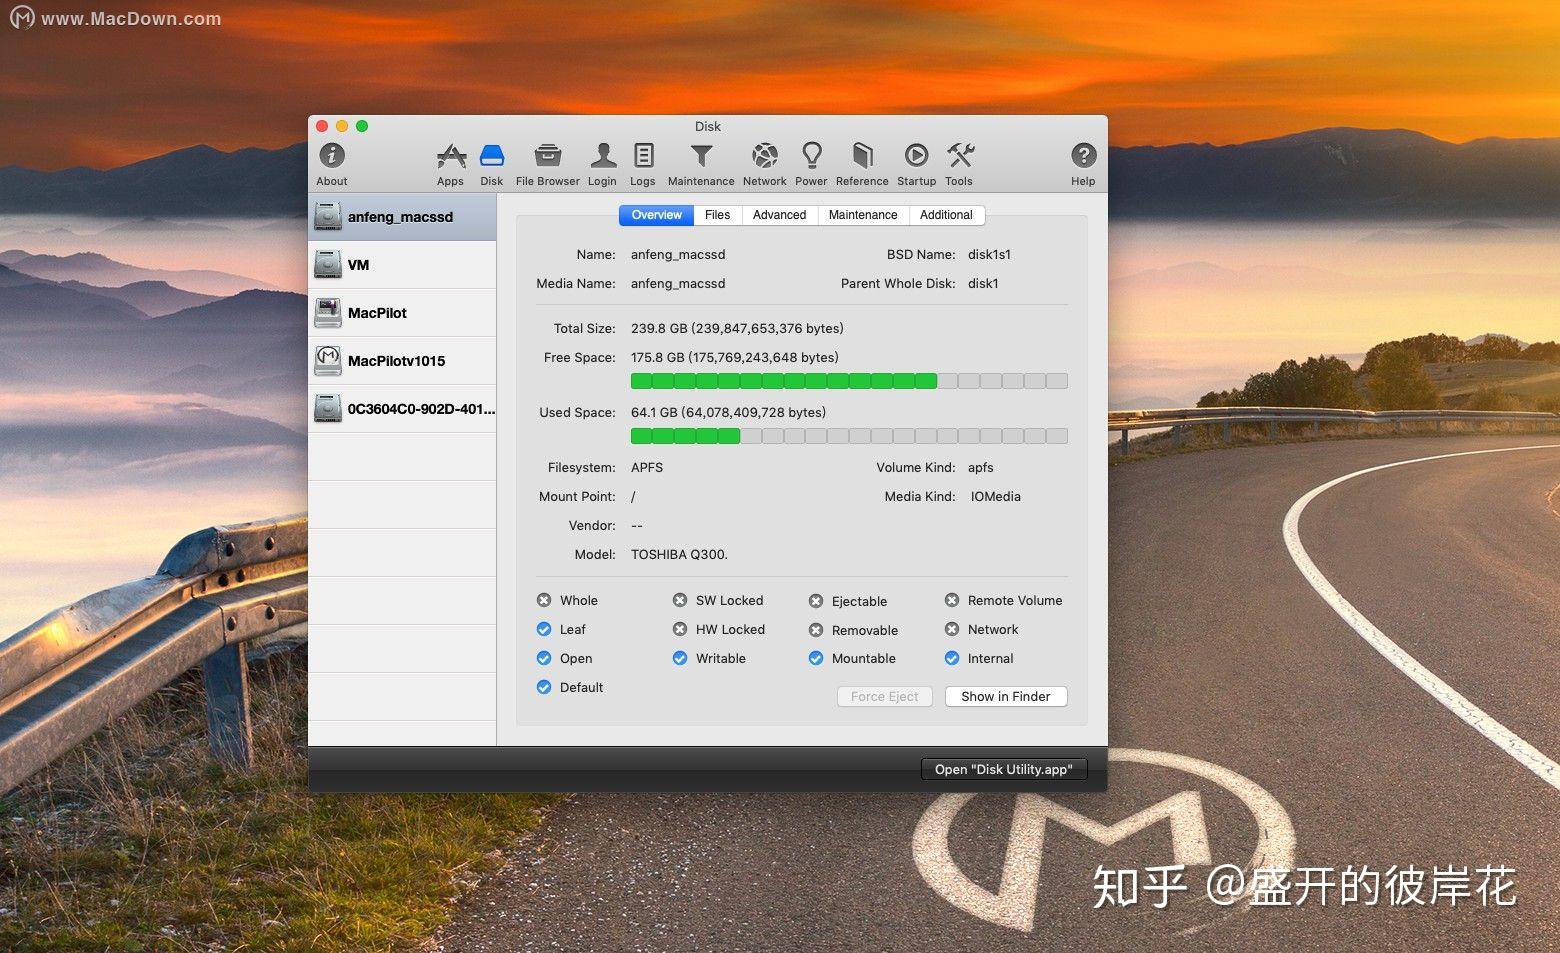 MacPilot for mac download